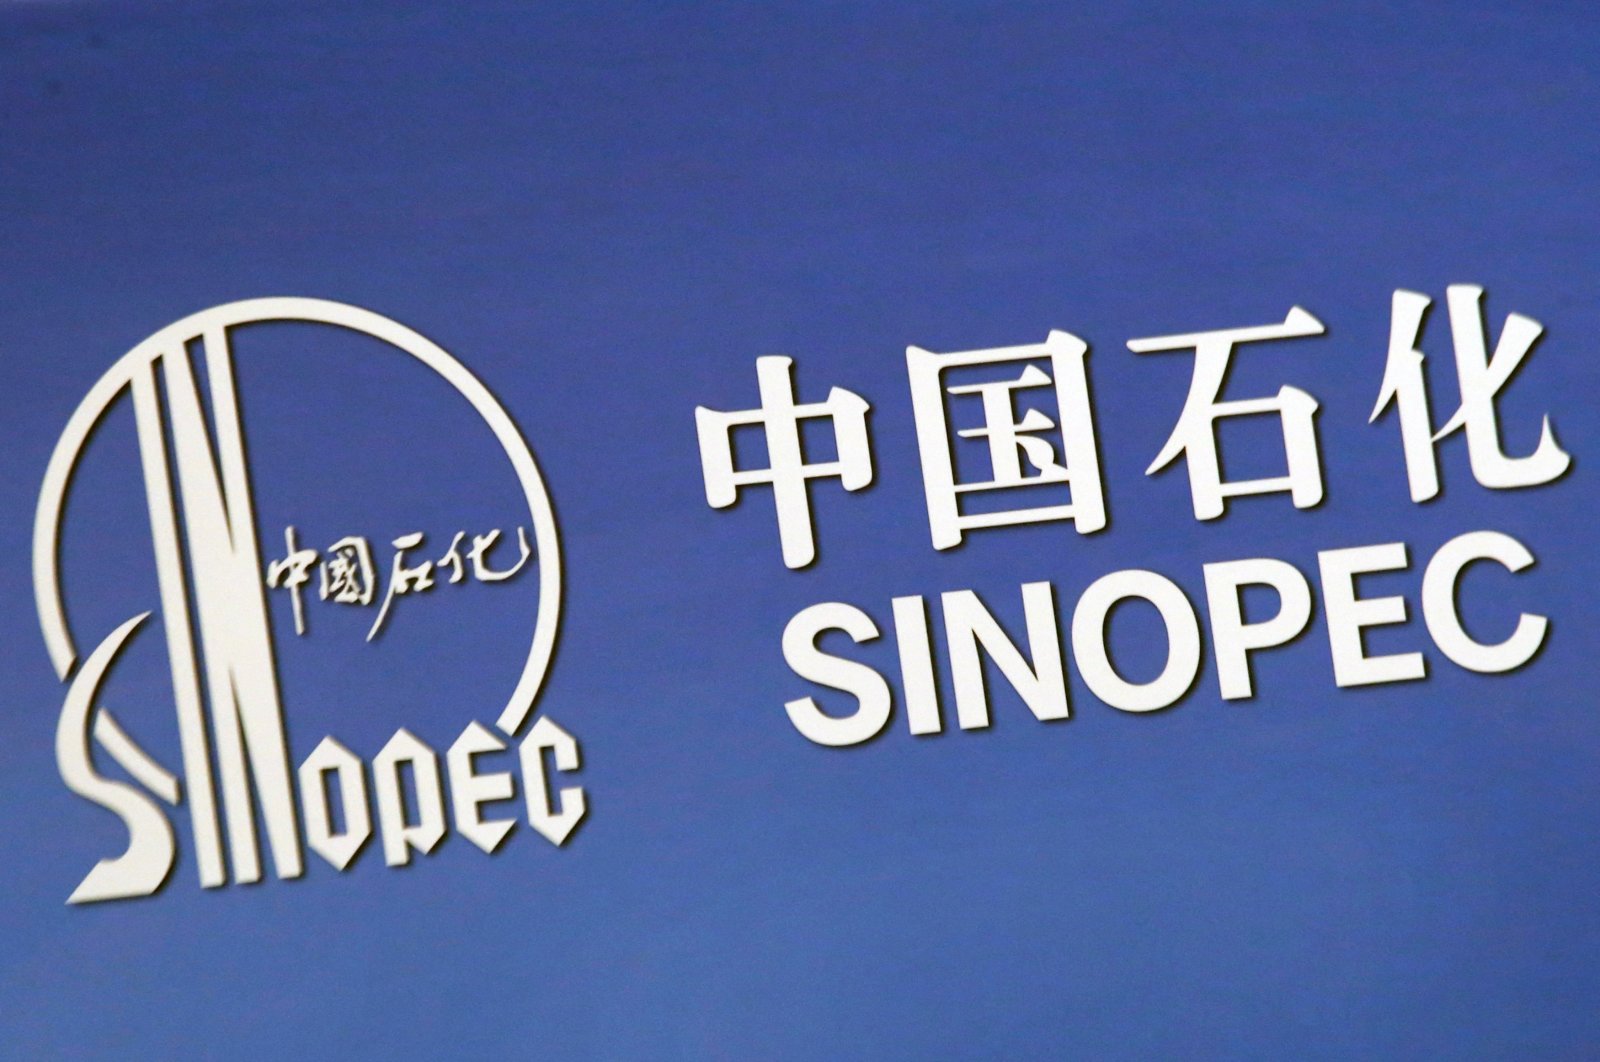 Kesepakatan tinta Sinopec China untuk memasuki pasar bahan bakar ritel di Sri Lanka yang dilanda krisis